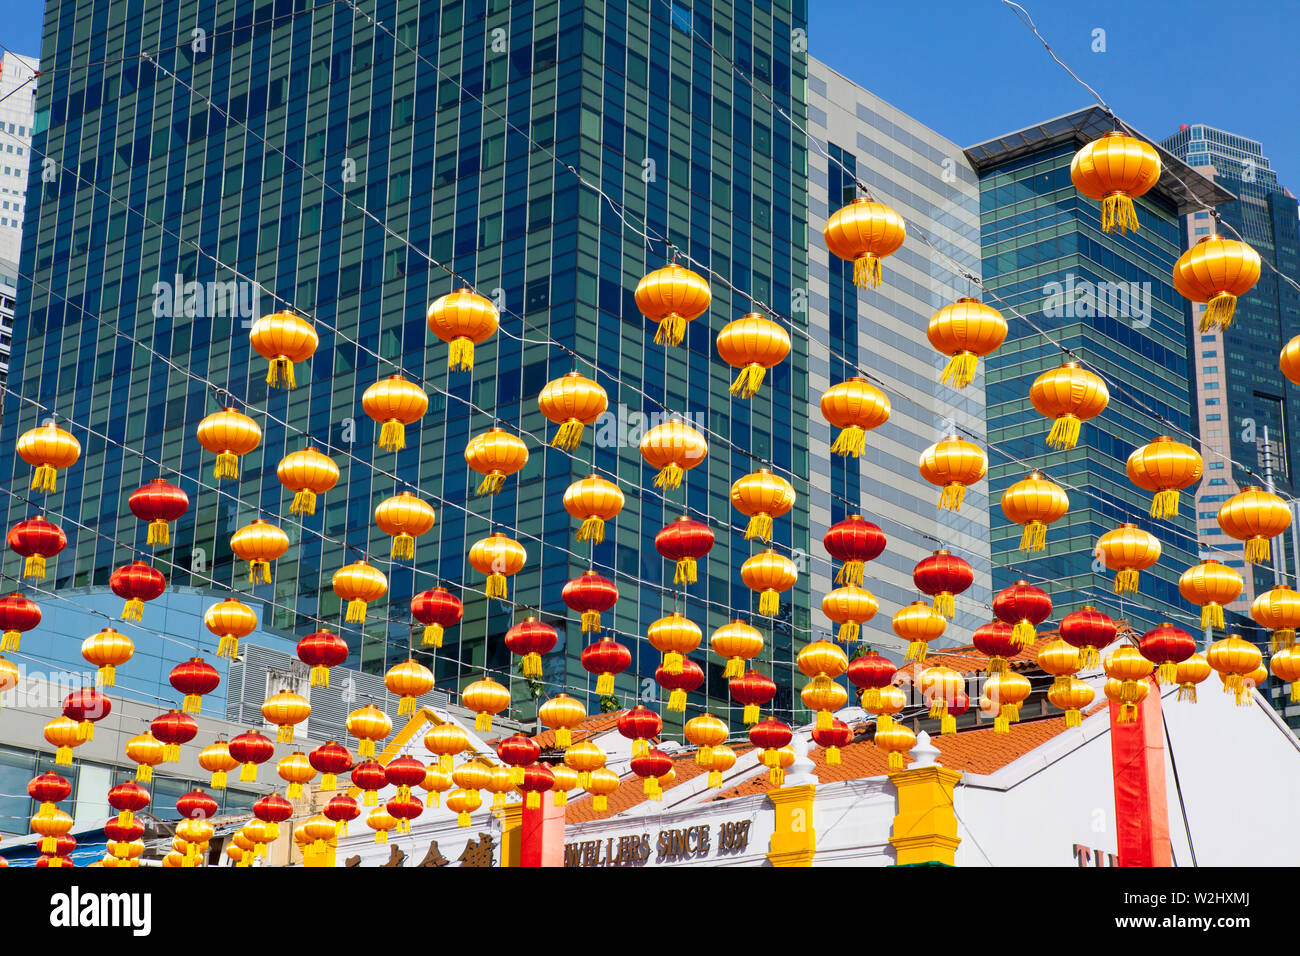 Les célébrations du Nouvel An chinois, China Town, Singapour Banque D'Images